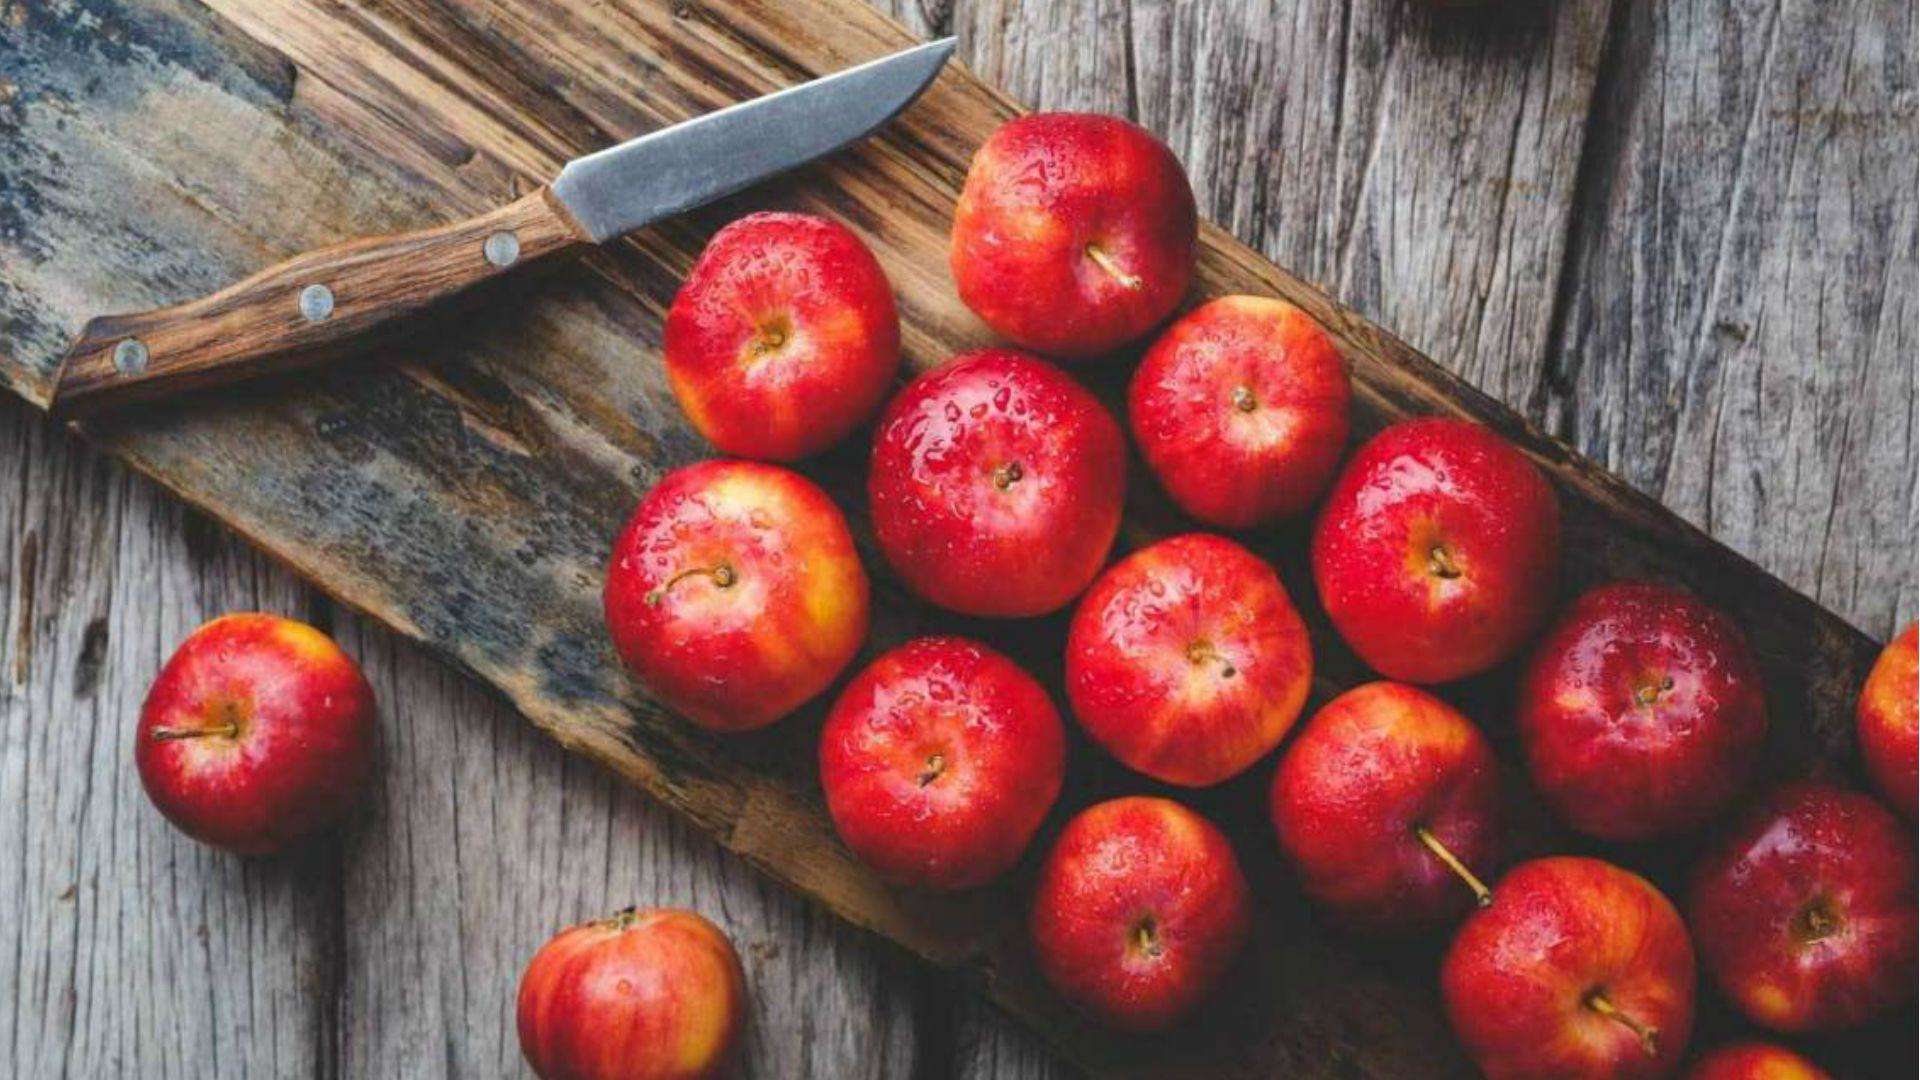 नई दिल्ली- खूबसूरती की खान है सेब, पढ़े ब्यूटीशियन शहनाज हुसैन के नेचुरल ब्यूटी टिप्स